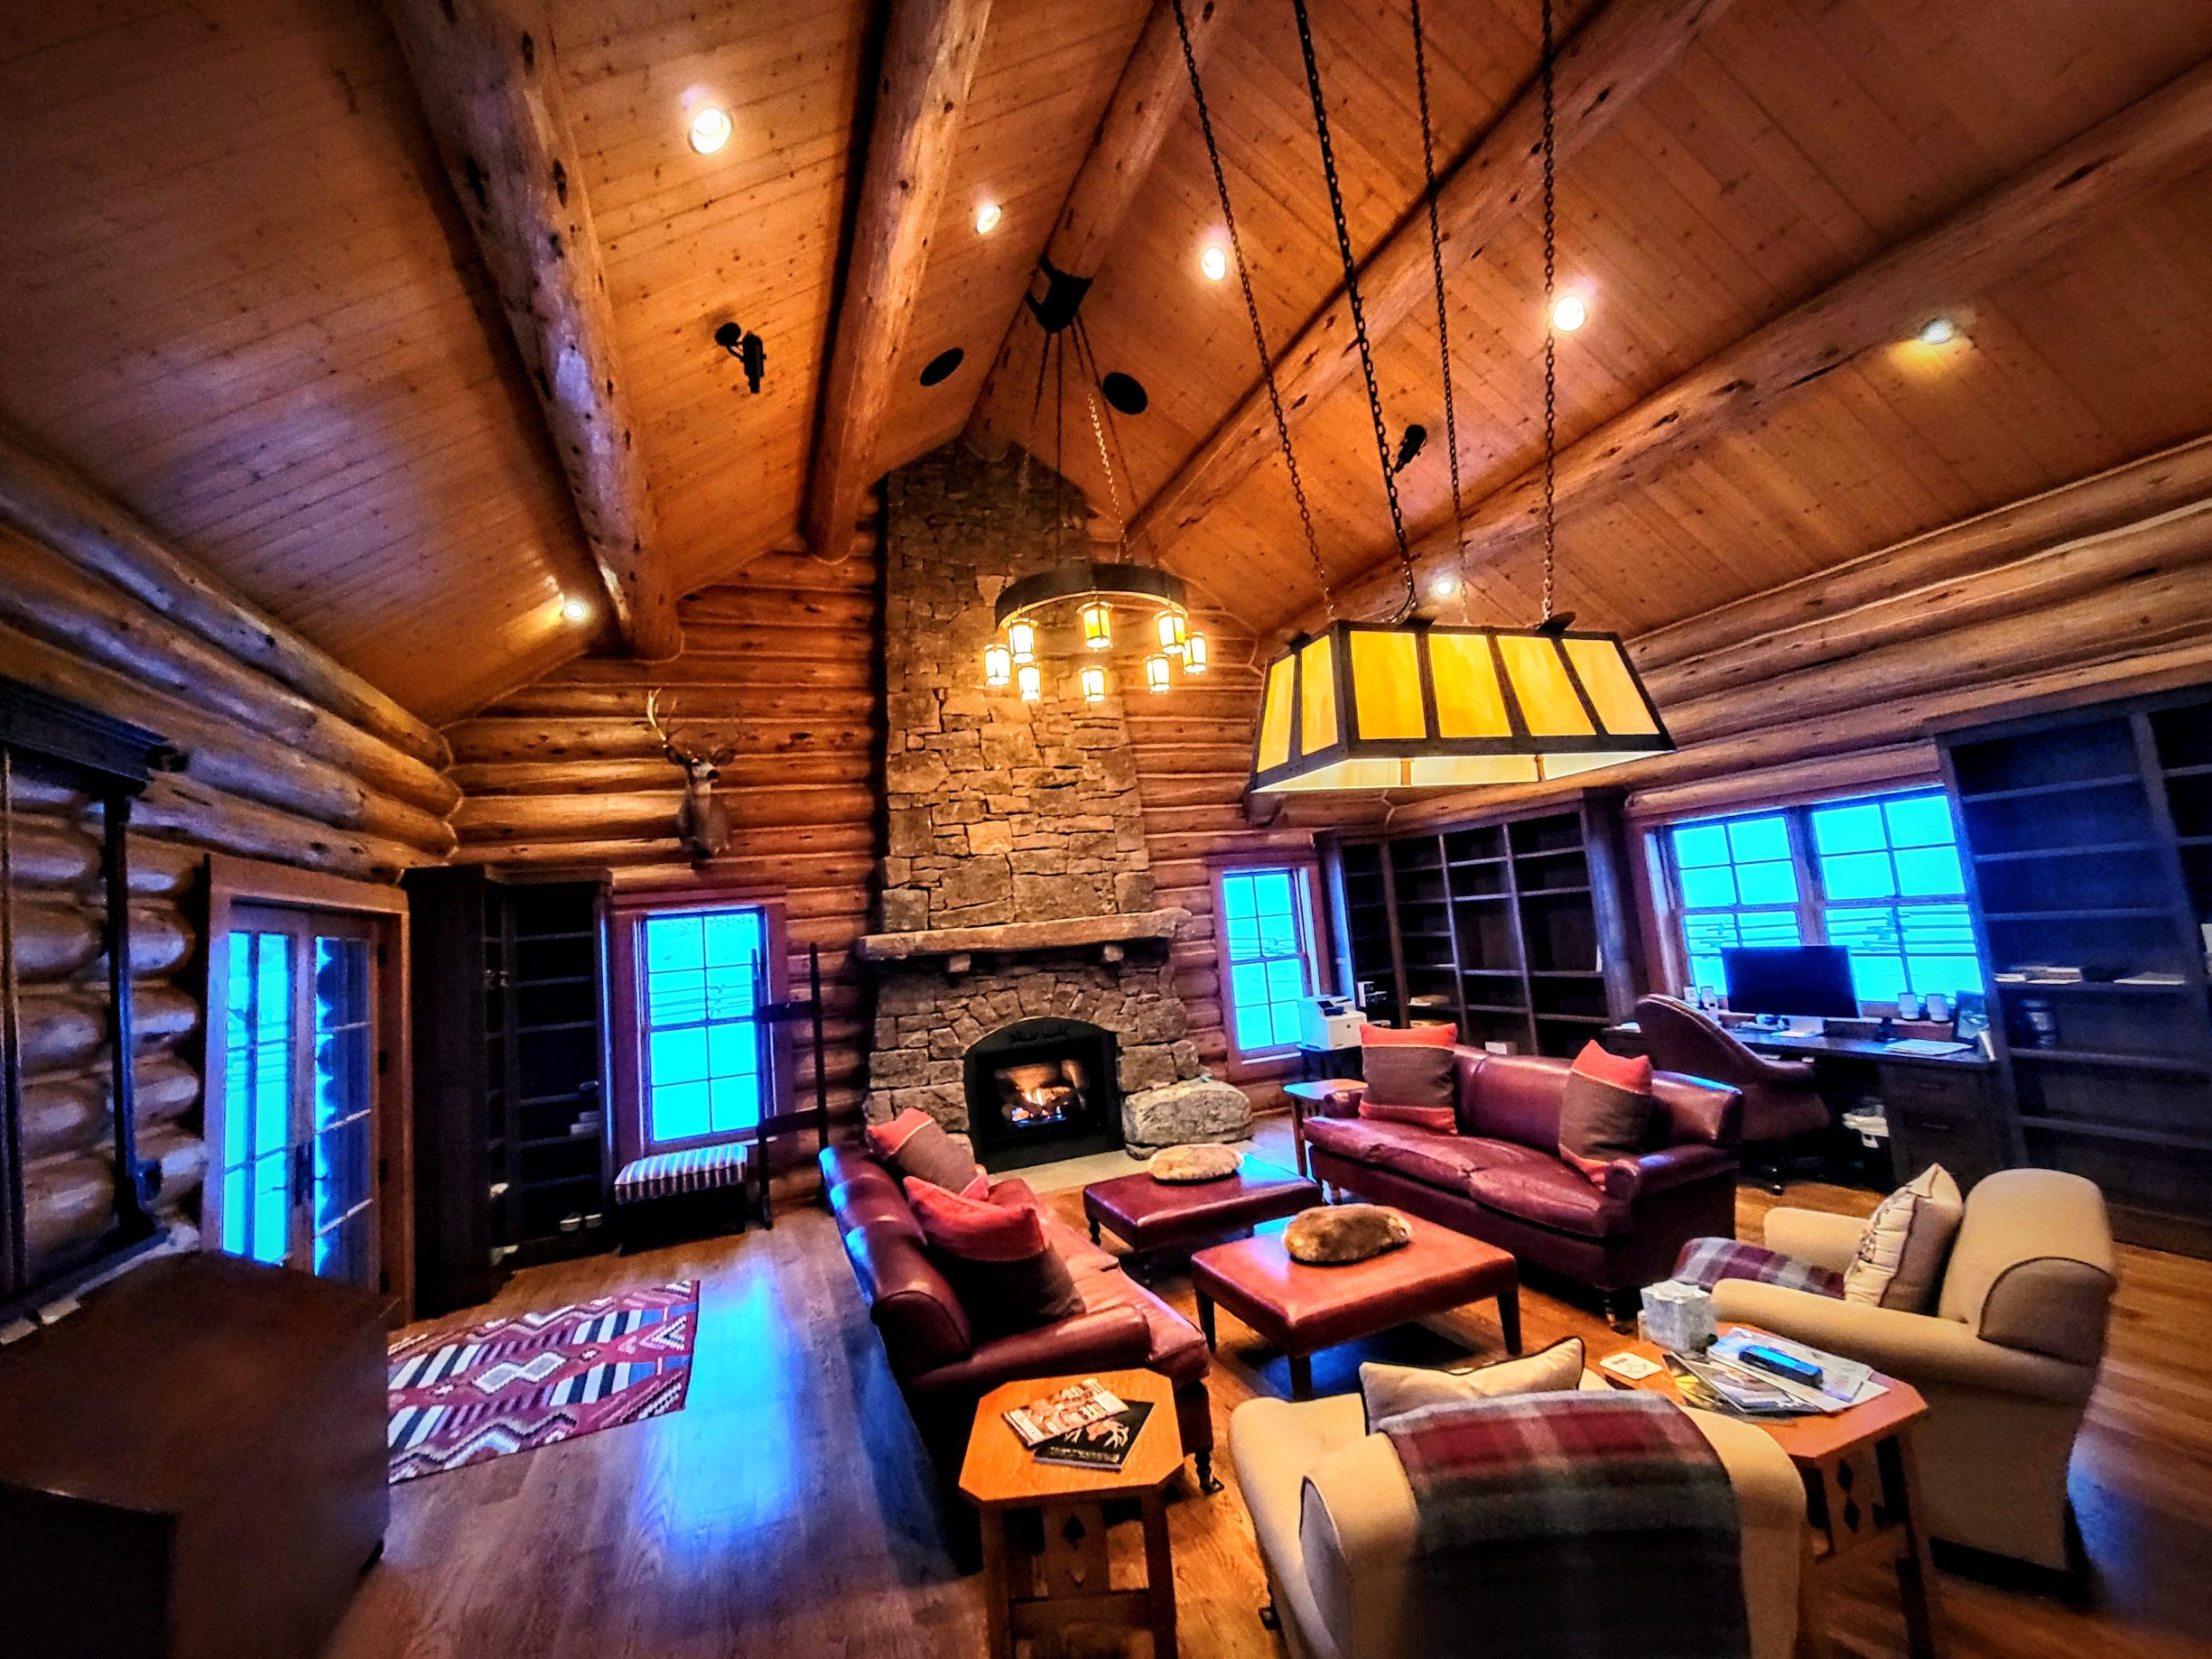 The Lodge Lounge Area